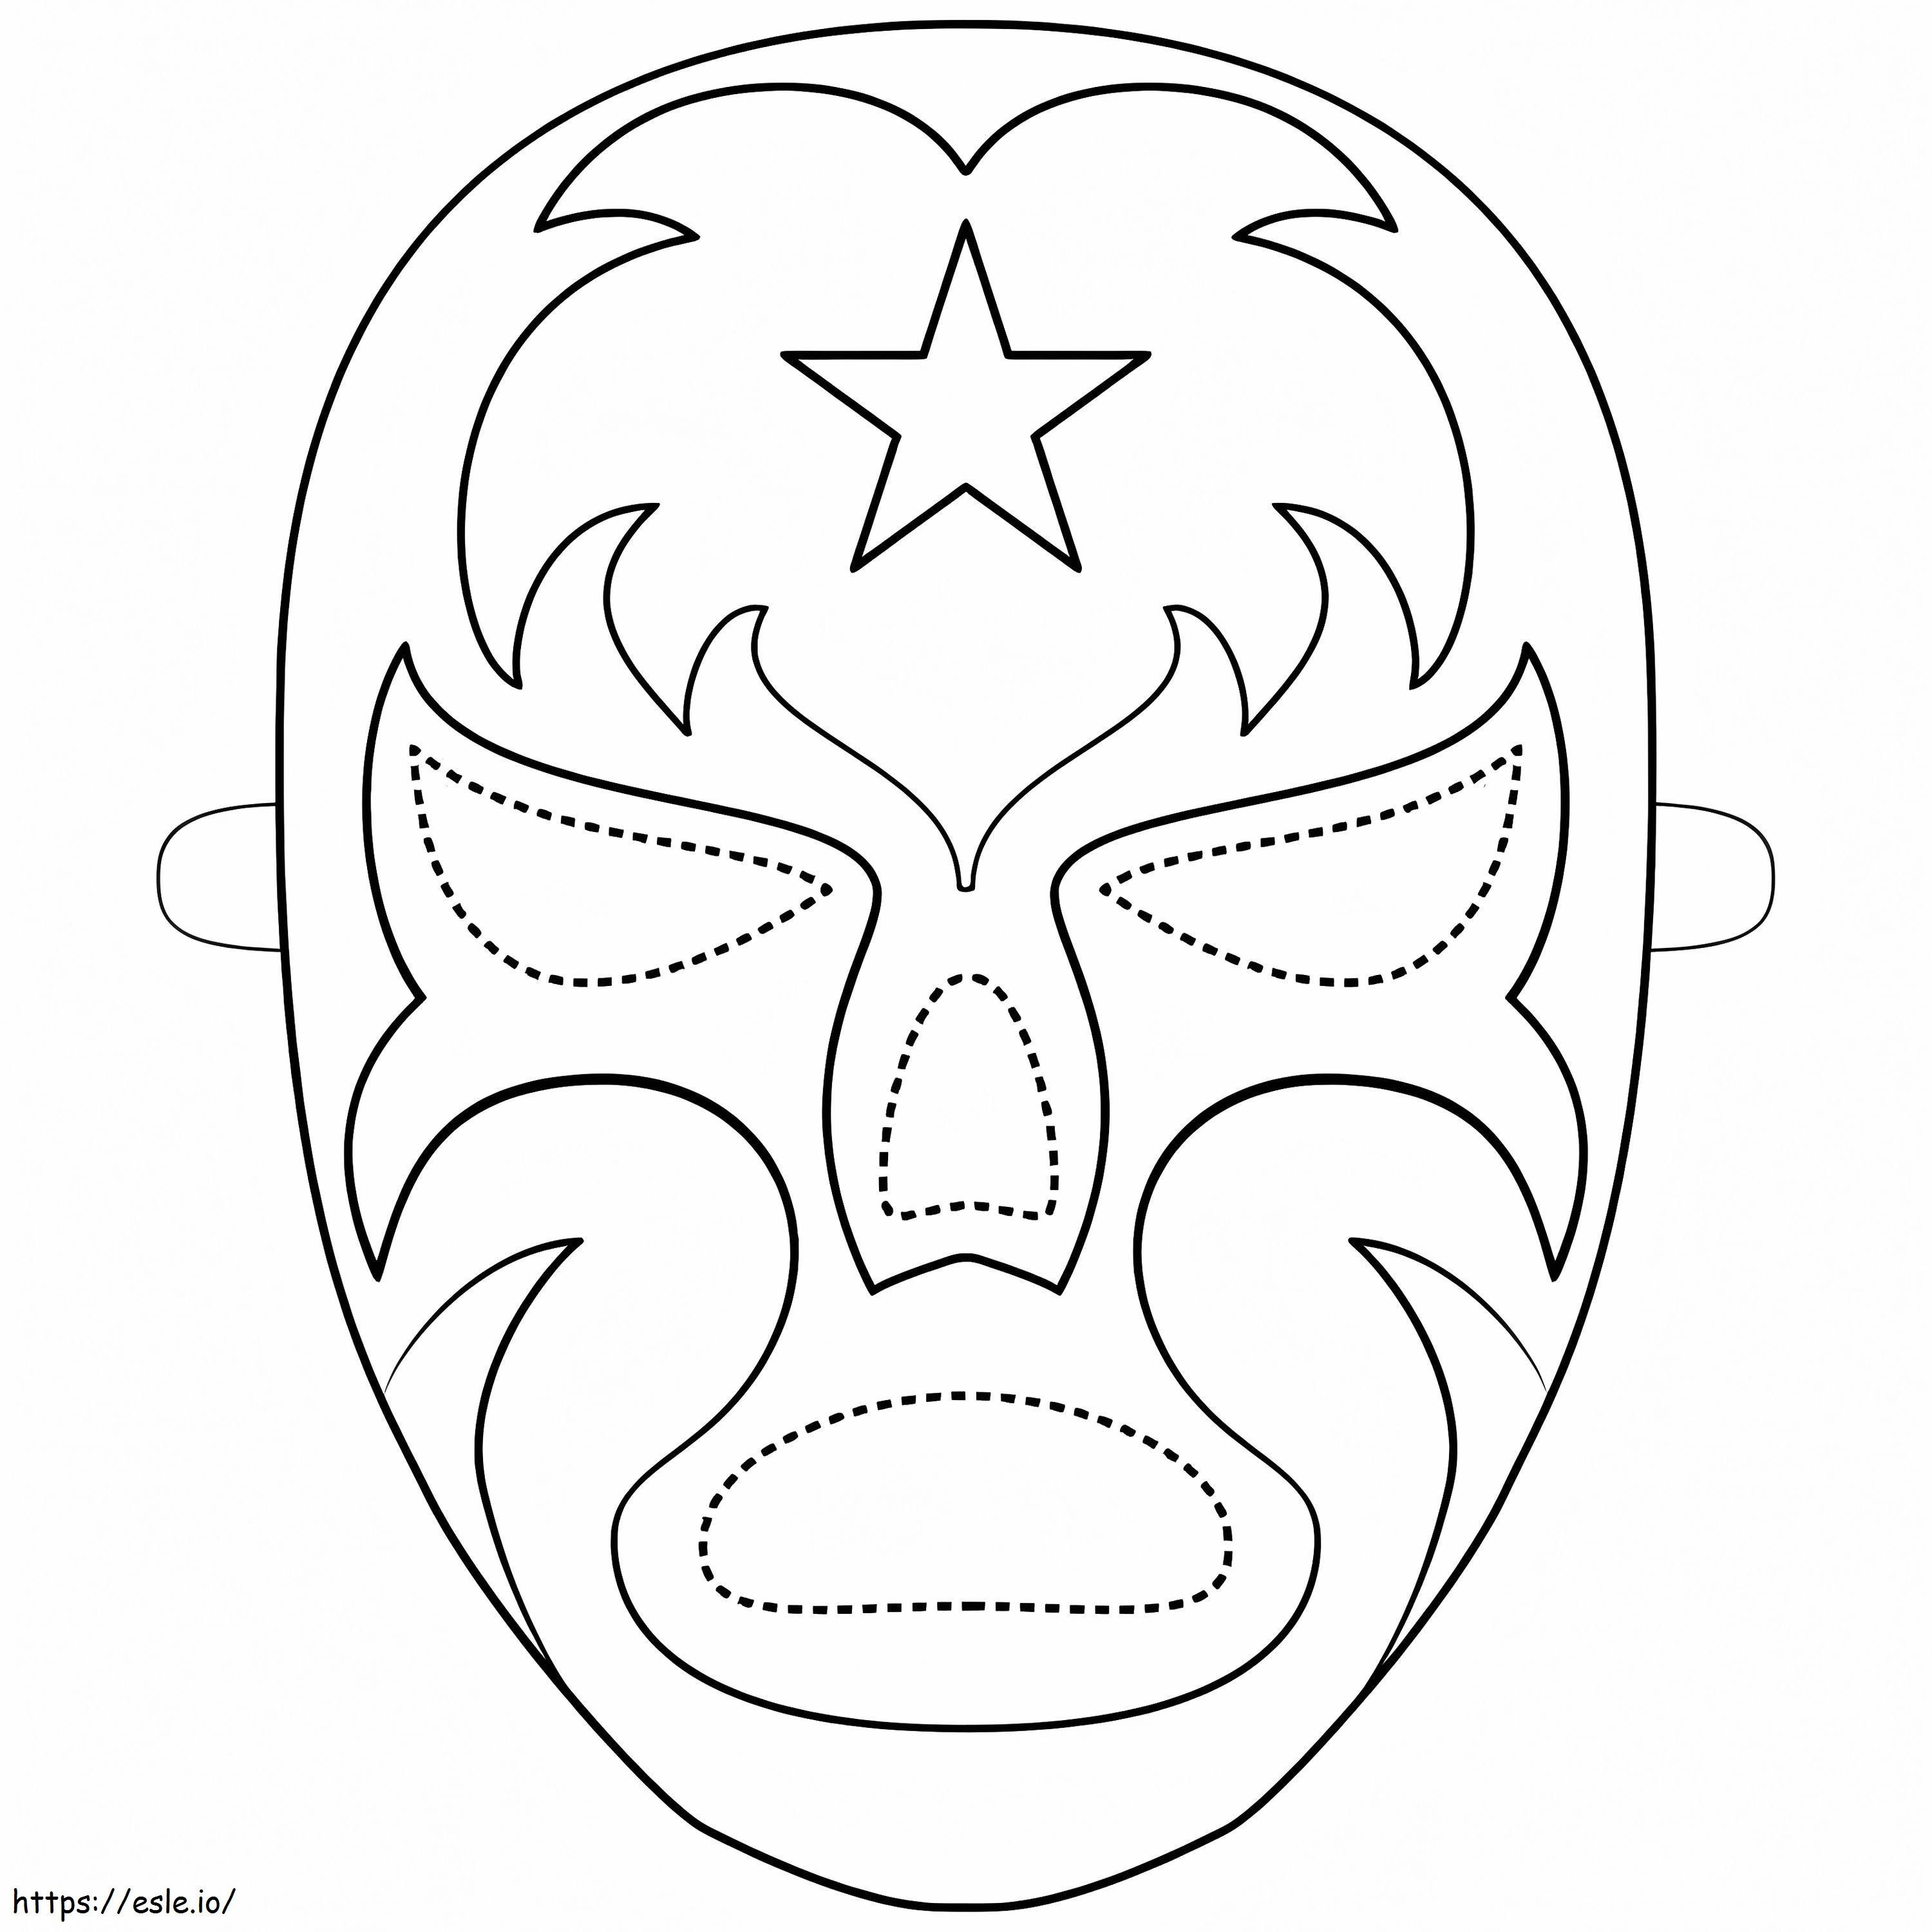 Máscara de luchador para colorear